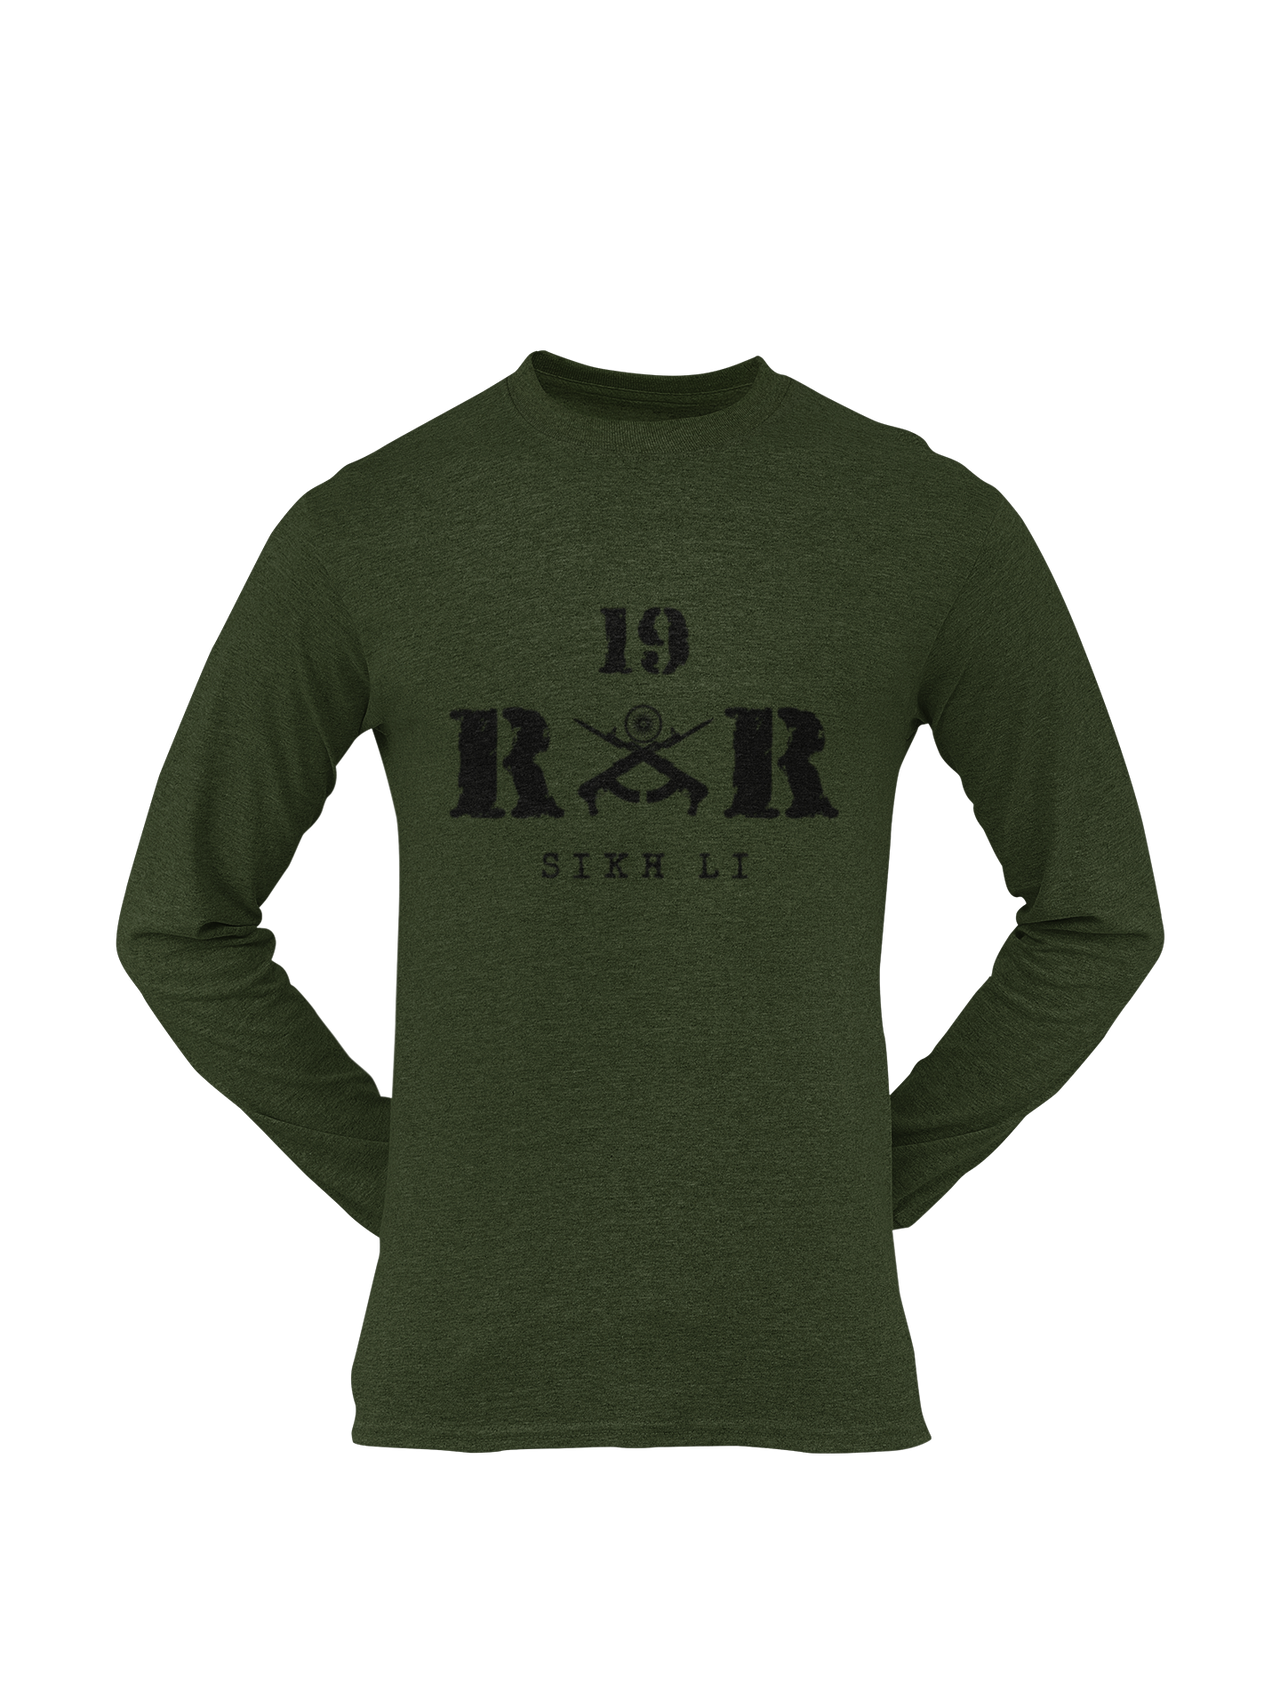 Rashtriya Rifles T-shirt - 19 RR Sikh Li (Men)